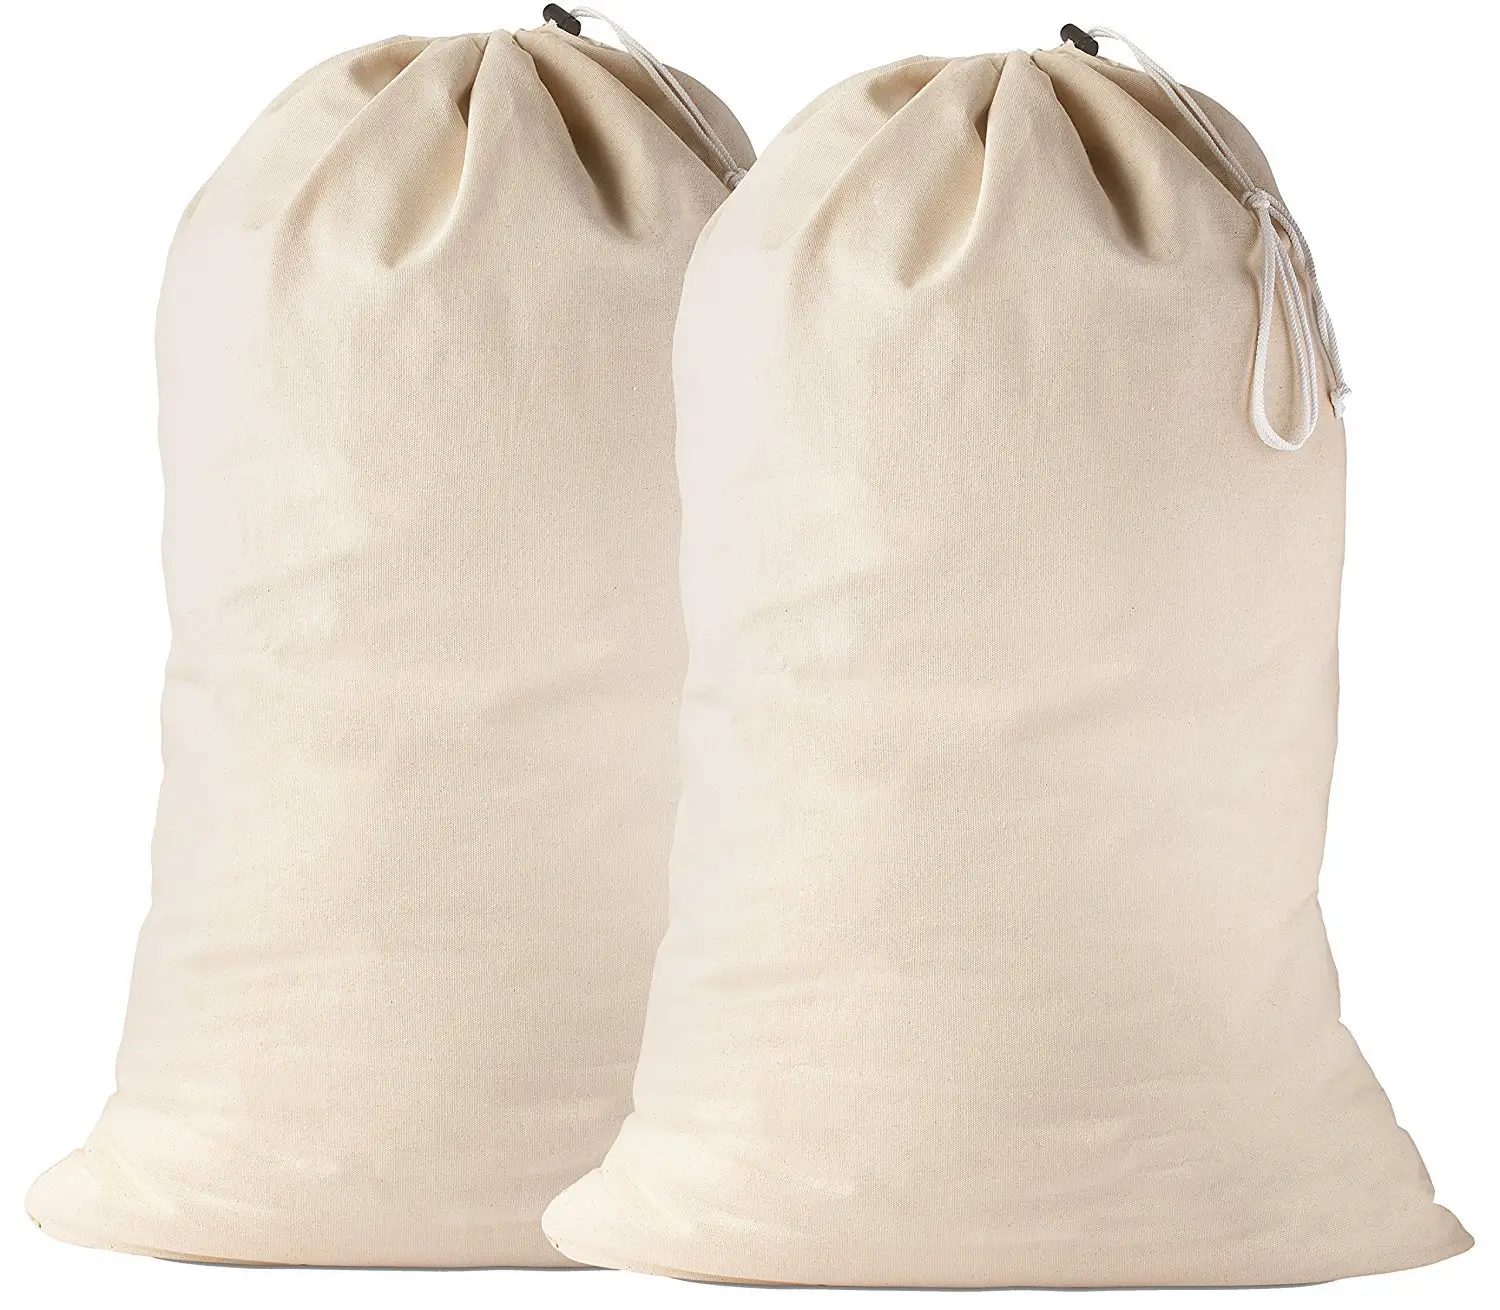 Дешевый многоразовый складной общий мешок для стирки, хлопчатобумажный мешок для химчистки, полиэфирные мешки для стирки оптом